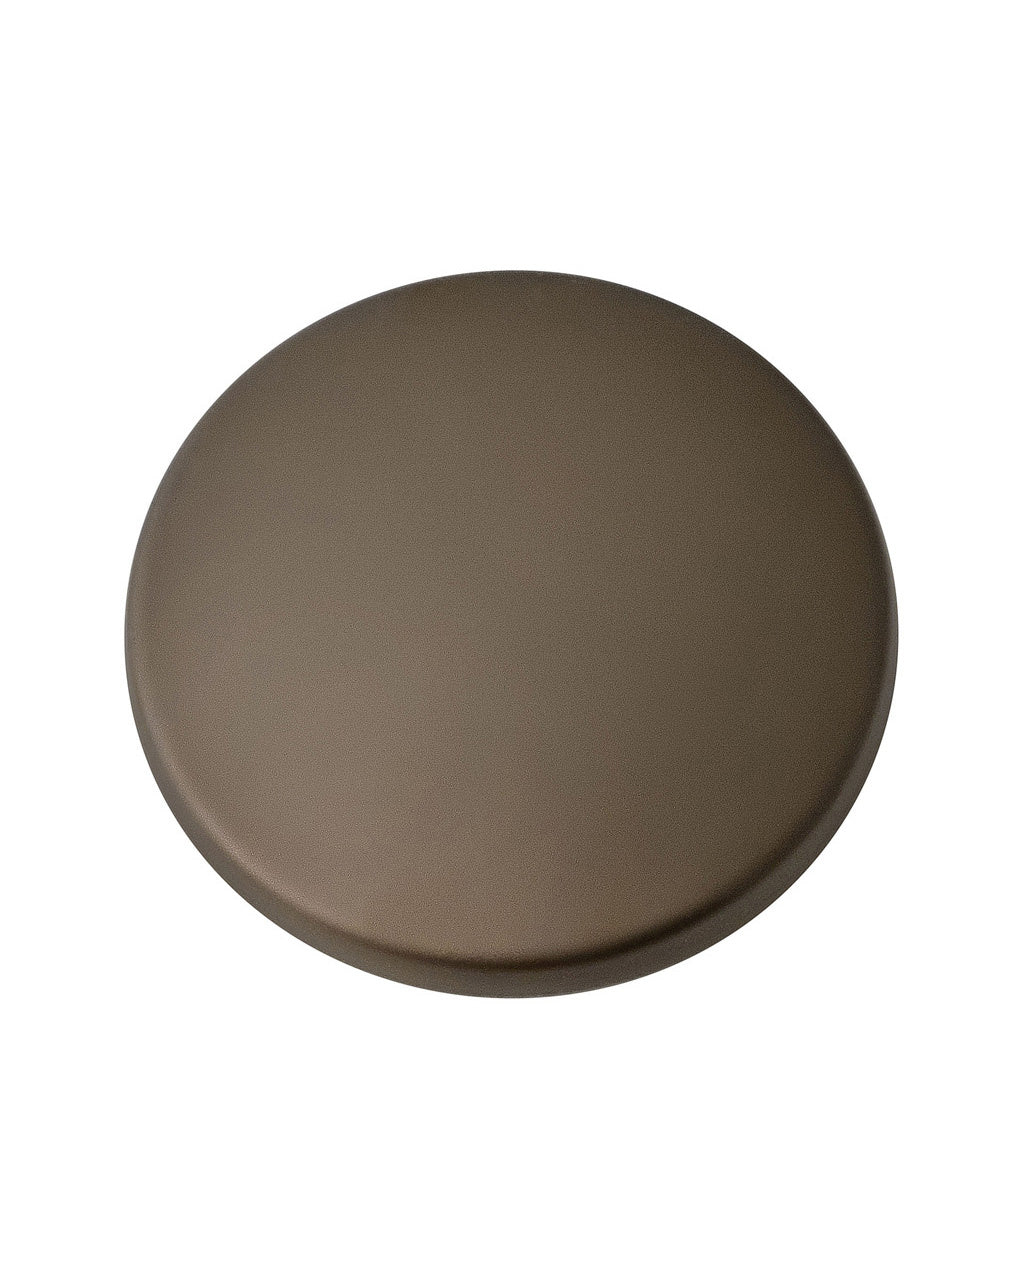 Hinkley - 932014FMM - Light Kit Cover - Light Kit Cover - Metallic Matte Bronze